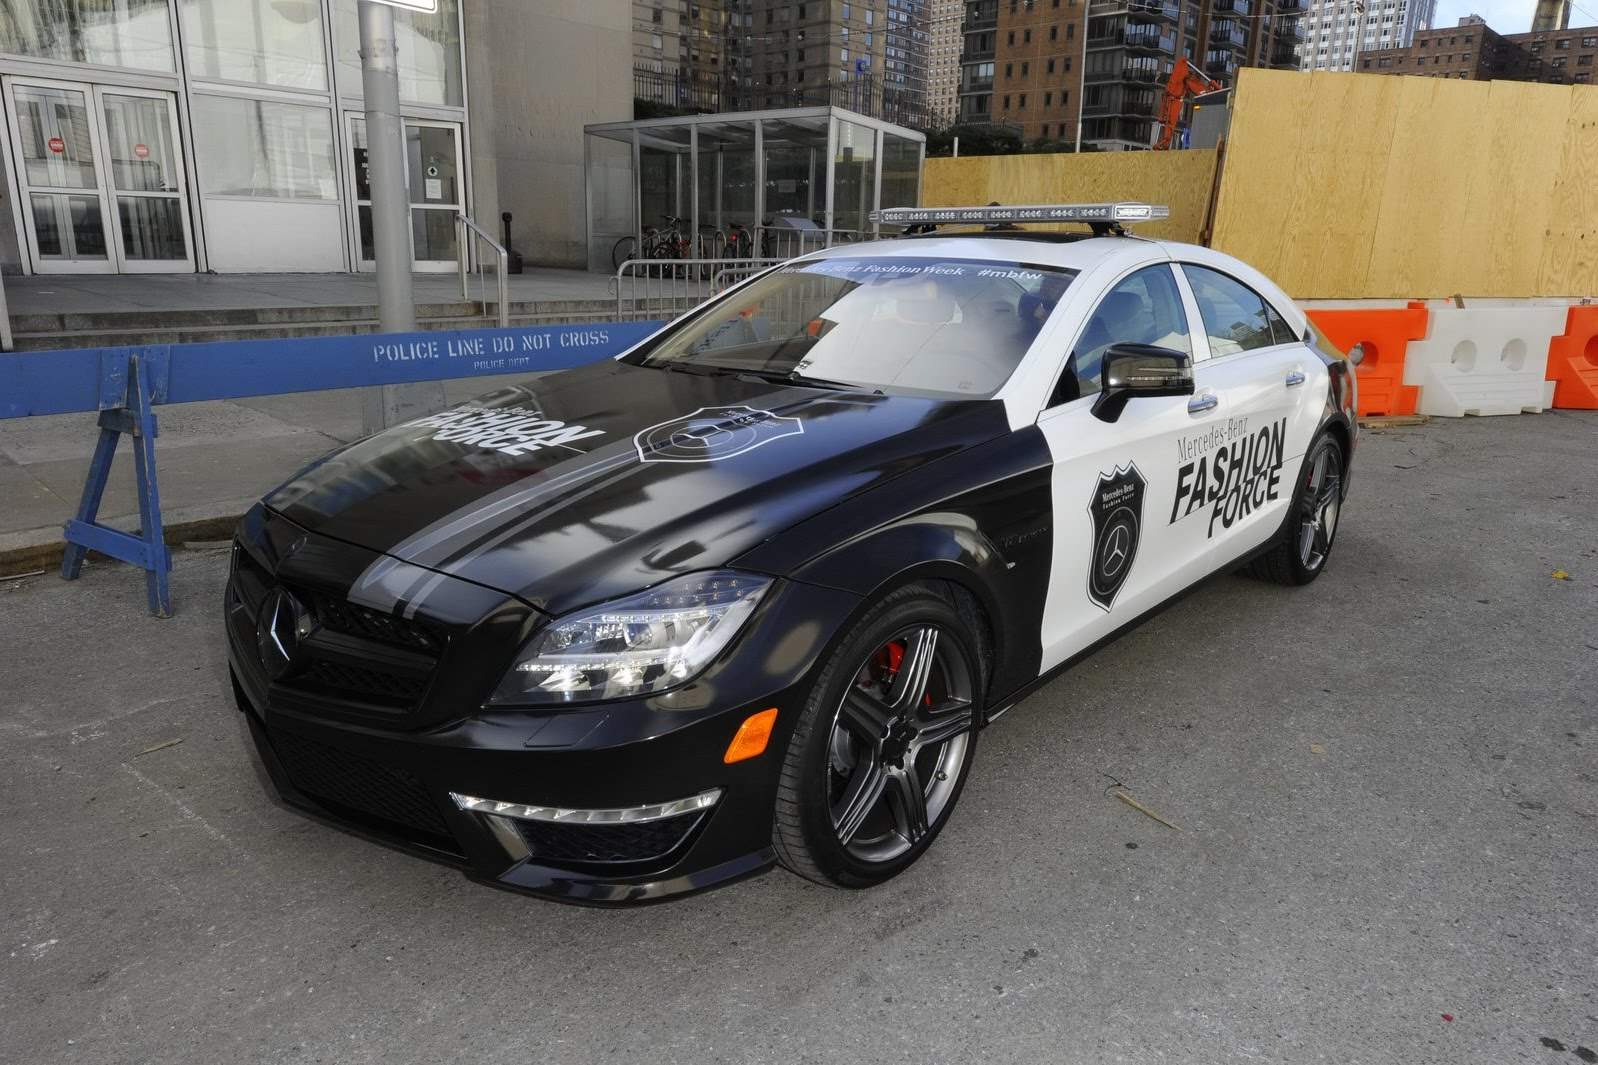 2012 Mercedes CLS 63 AMG Fashion Police Car 3